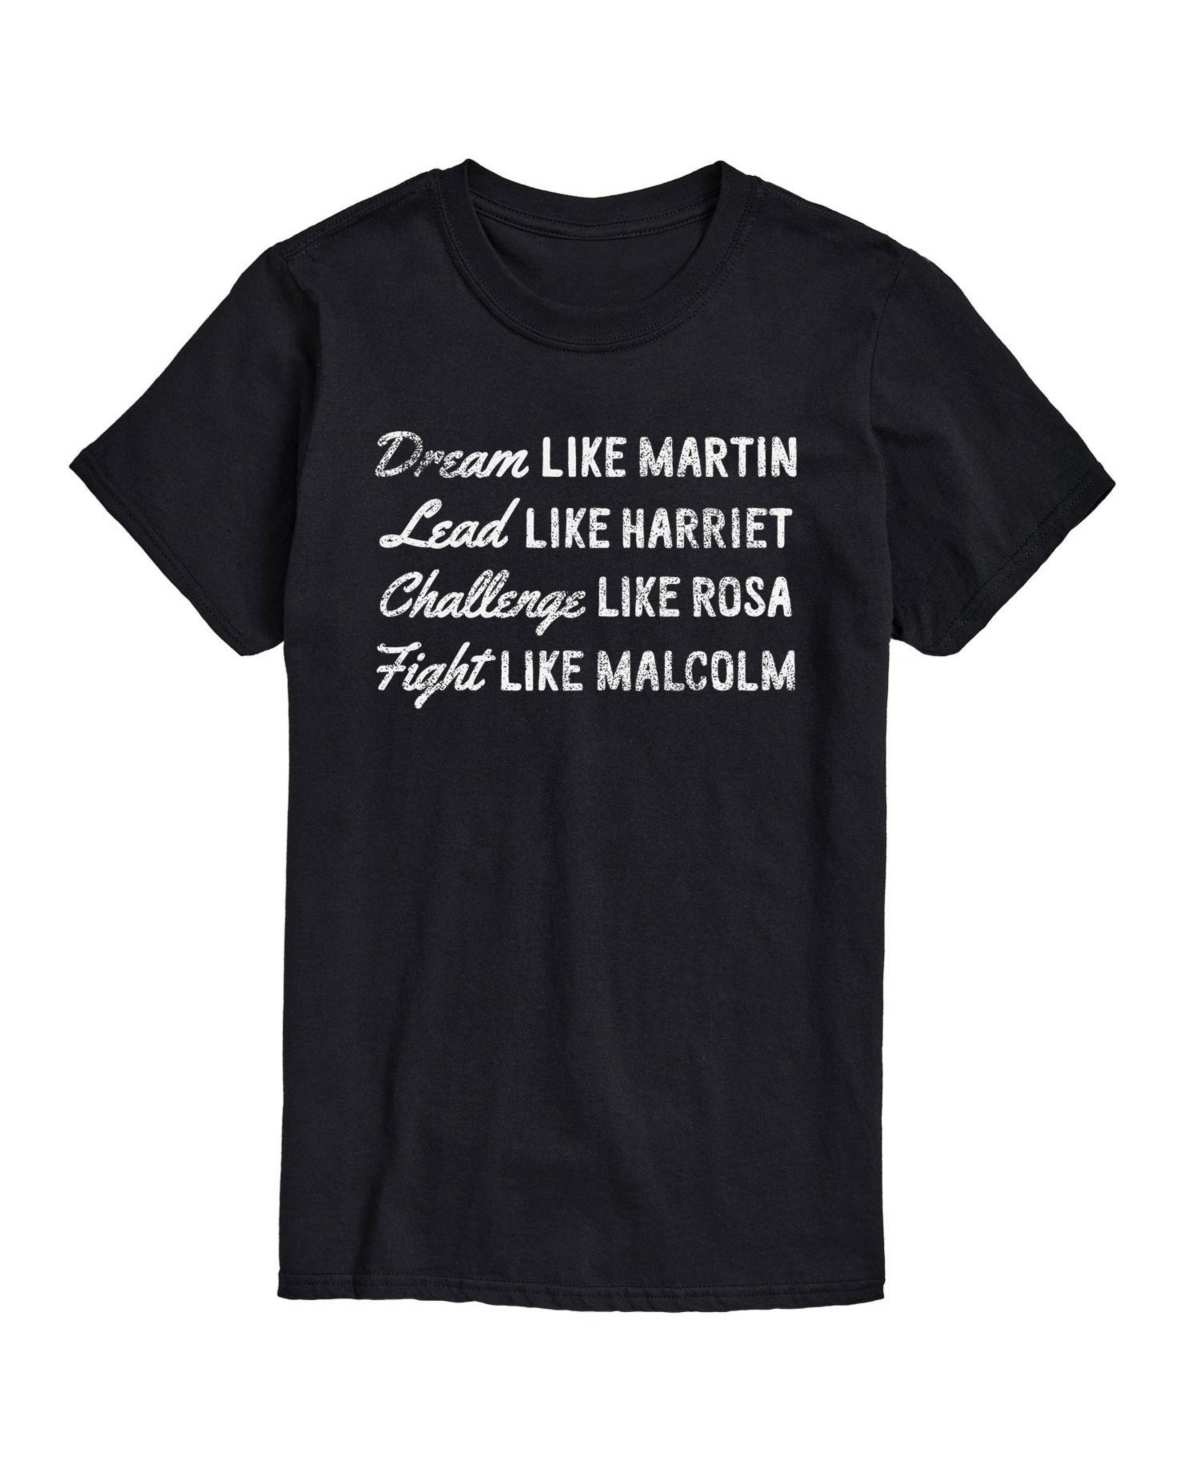 Airwaves Men's Dream Like Martin Short Sleeves T-shirt In Black